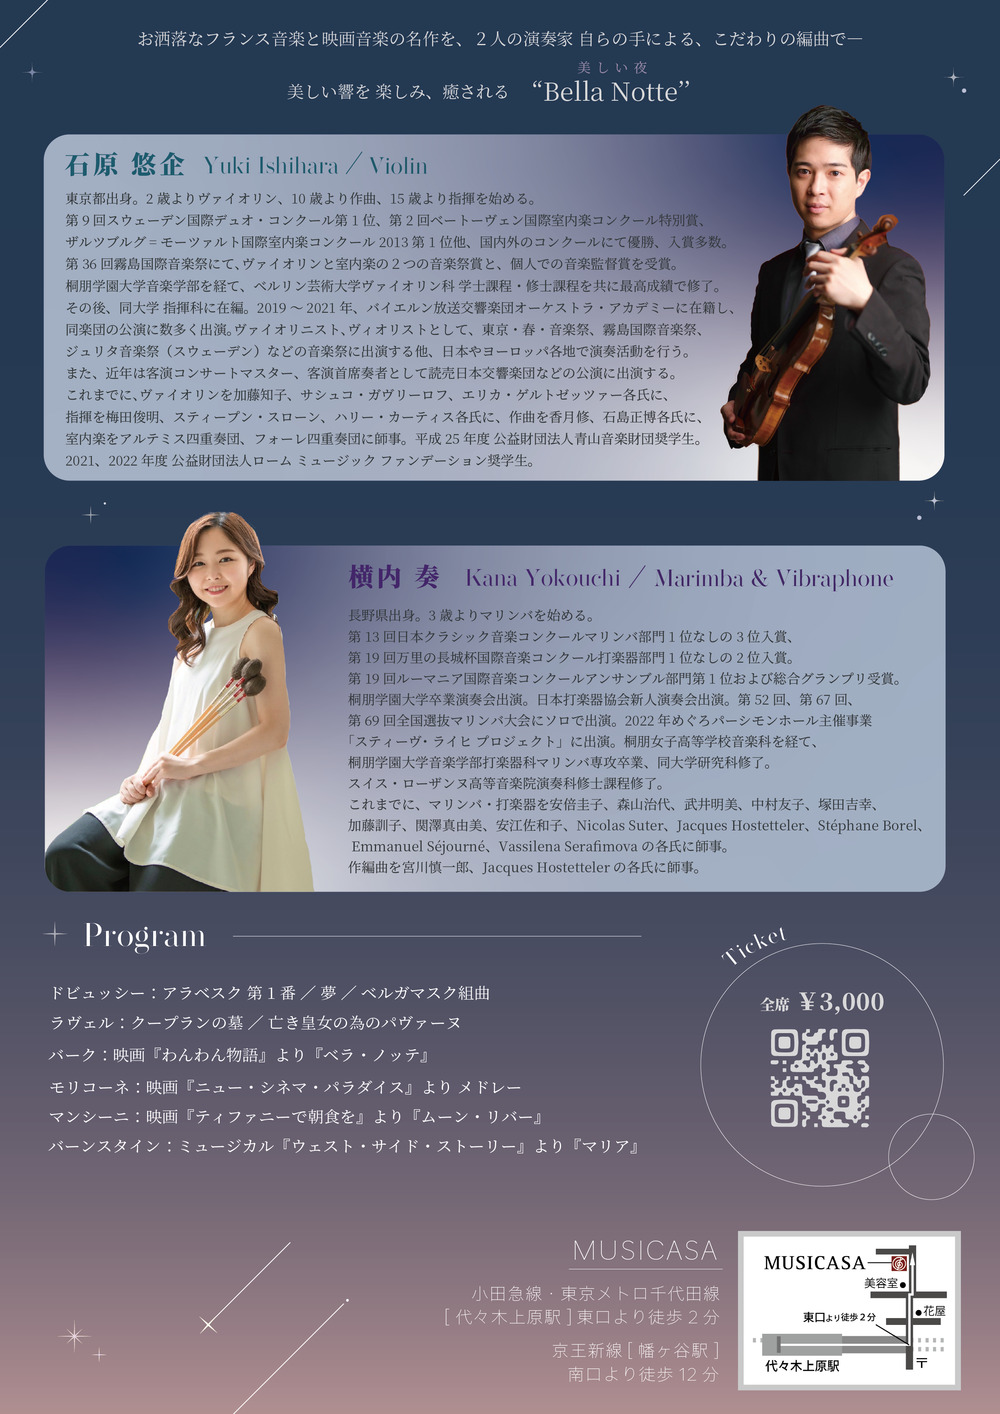 Bella Notte - ヴァイオリンとマリンバ、ヴィブラフォンの響きに癒される、美しい夜 【Kana Yokouchi】 | ムジカーザ